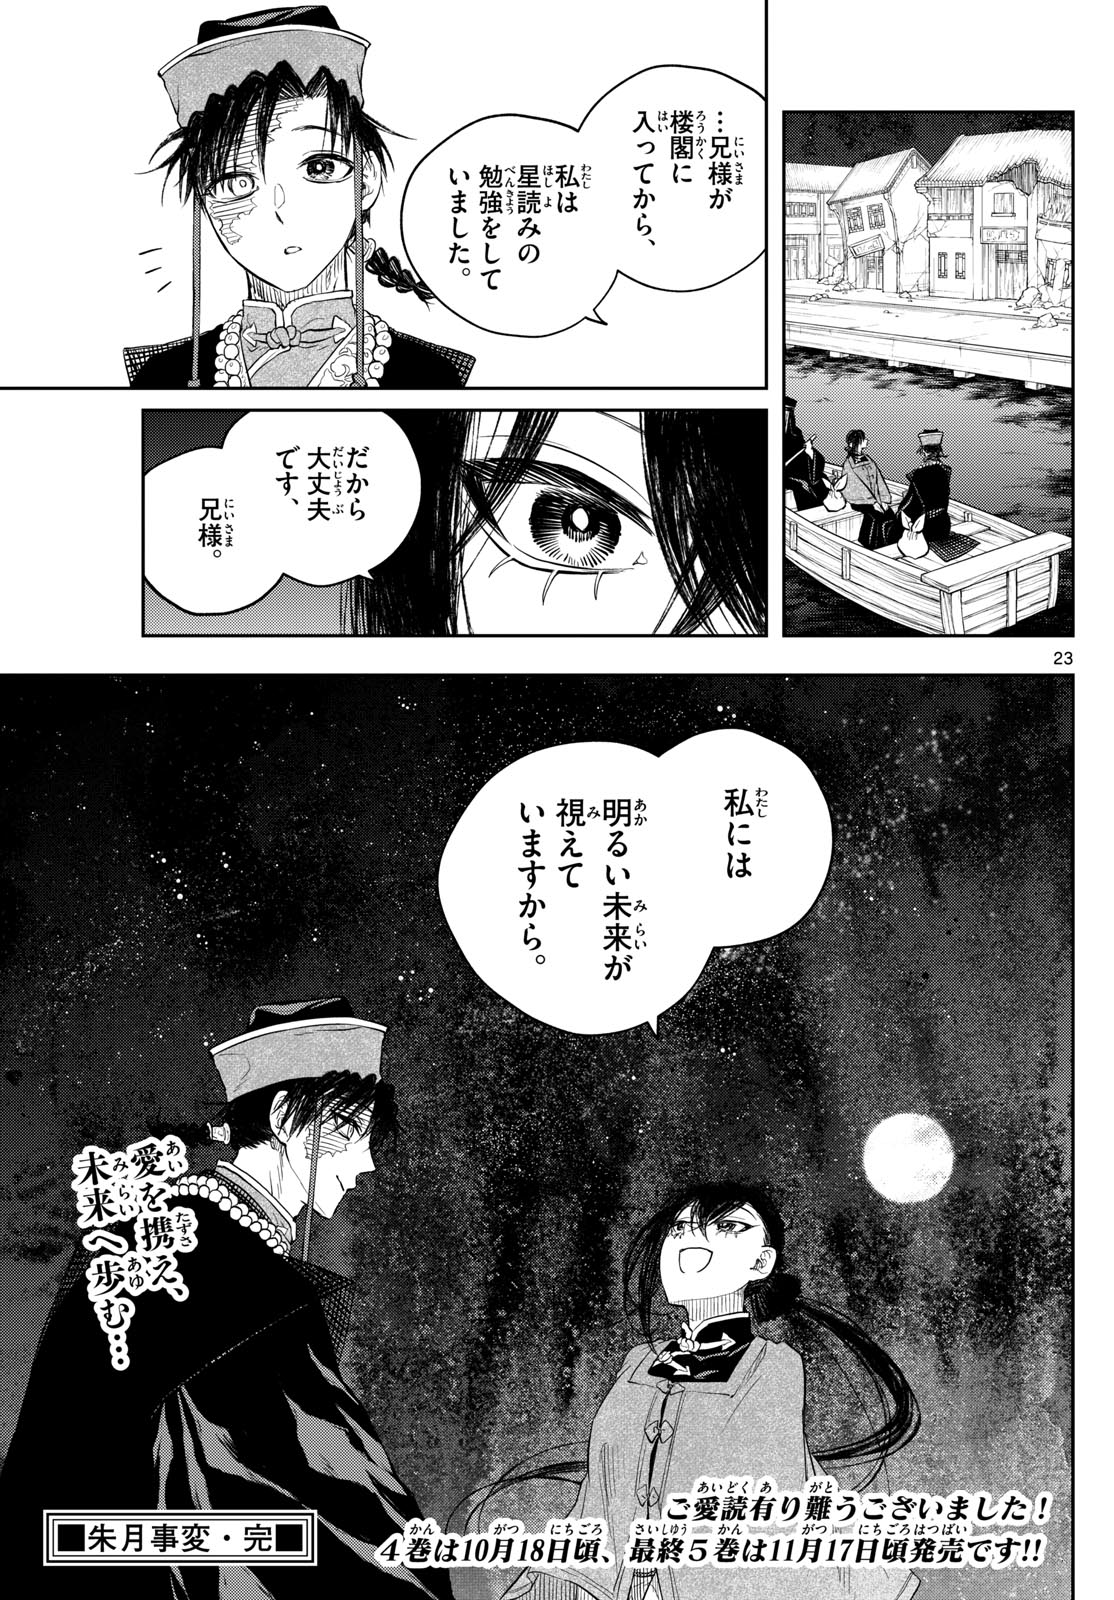 Akatsuki Jihen - Chapter 46 - Page 23